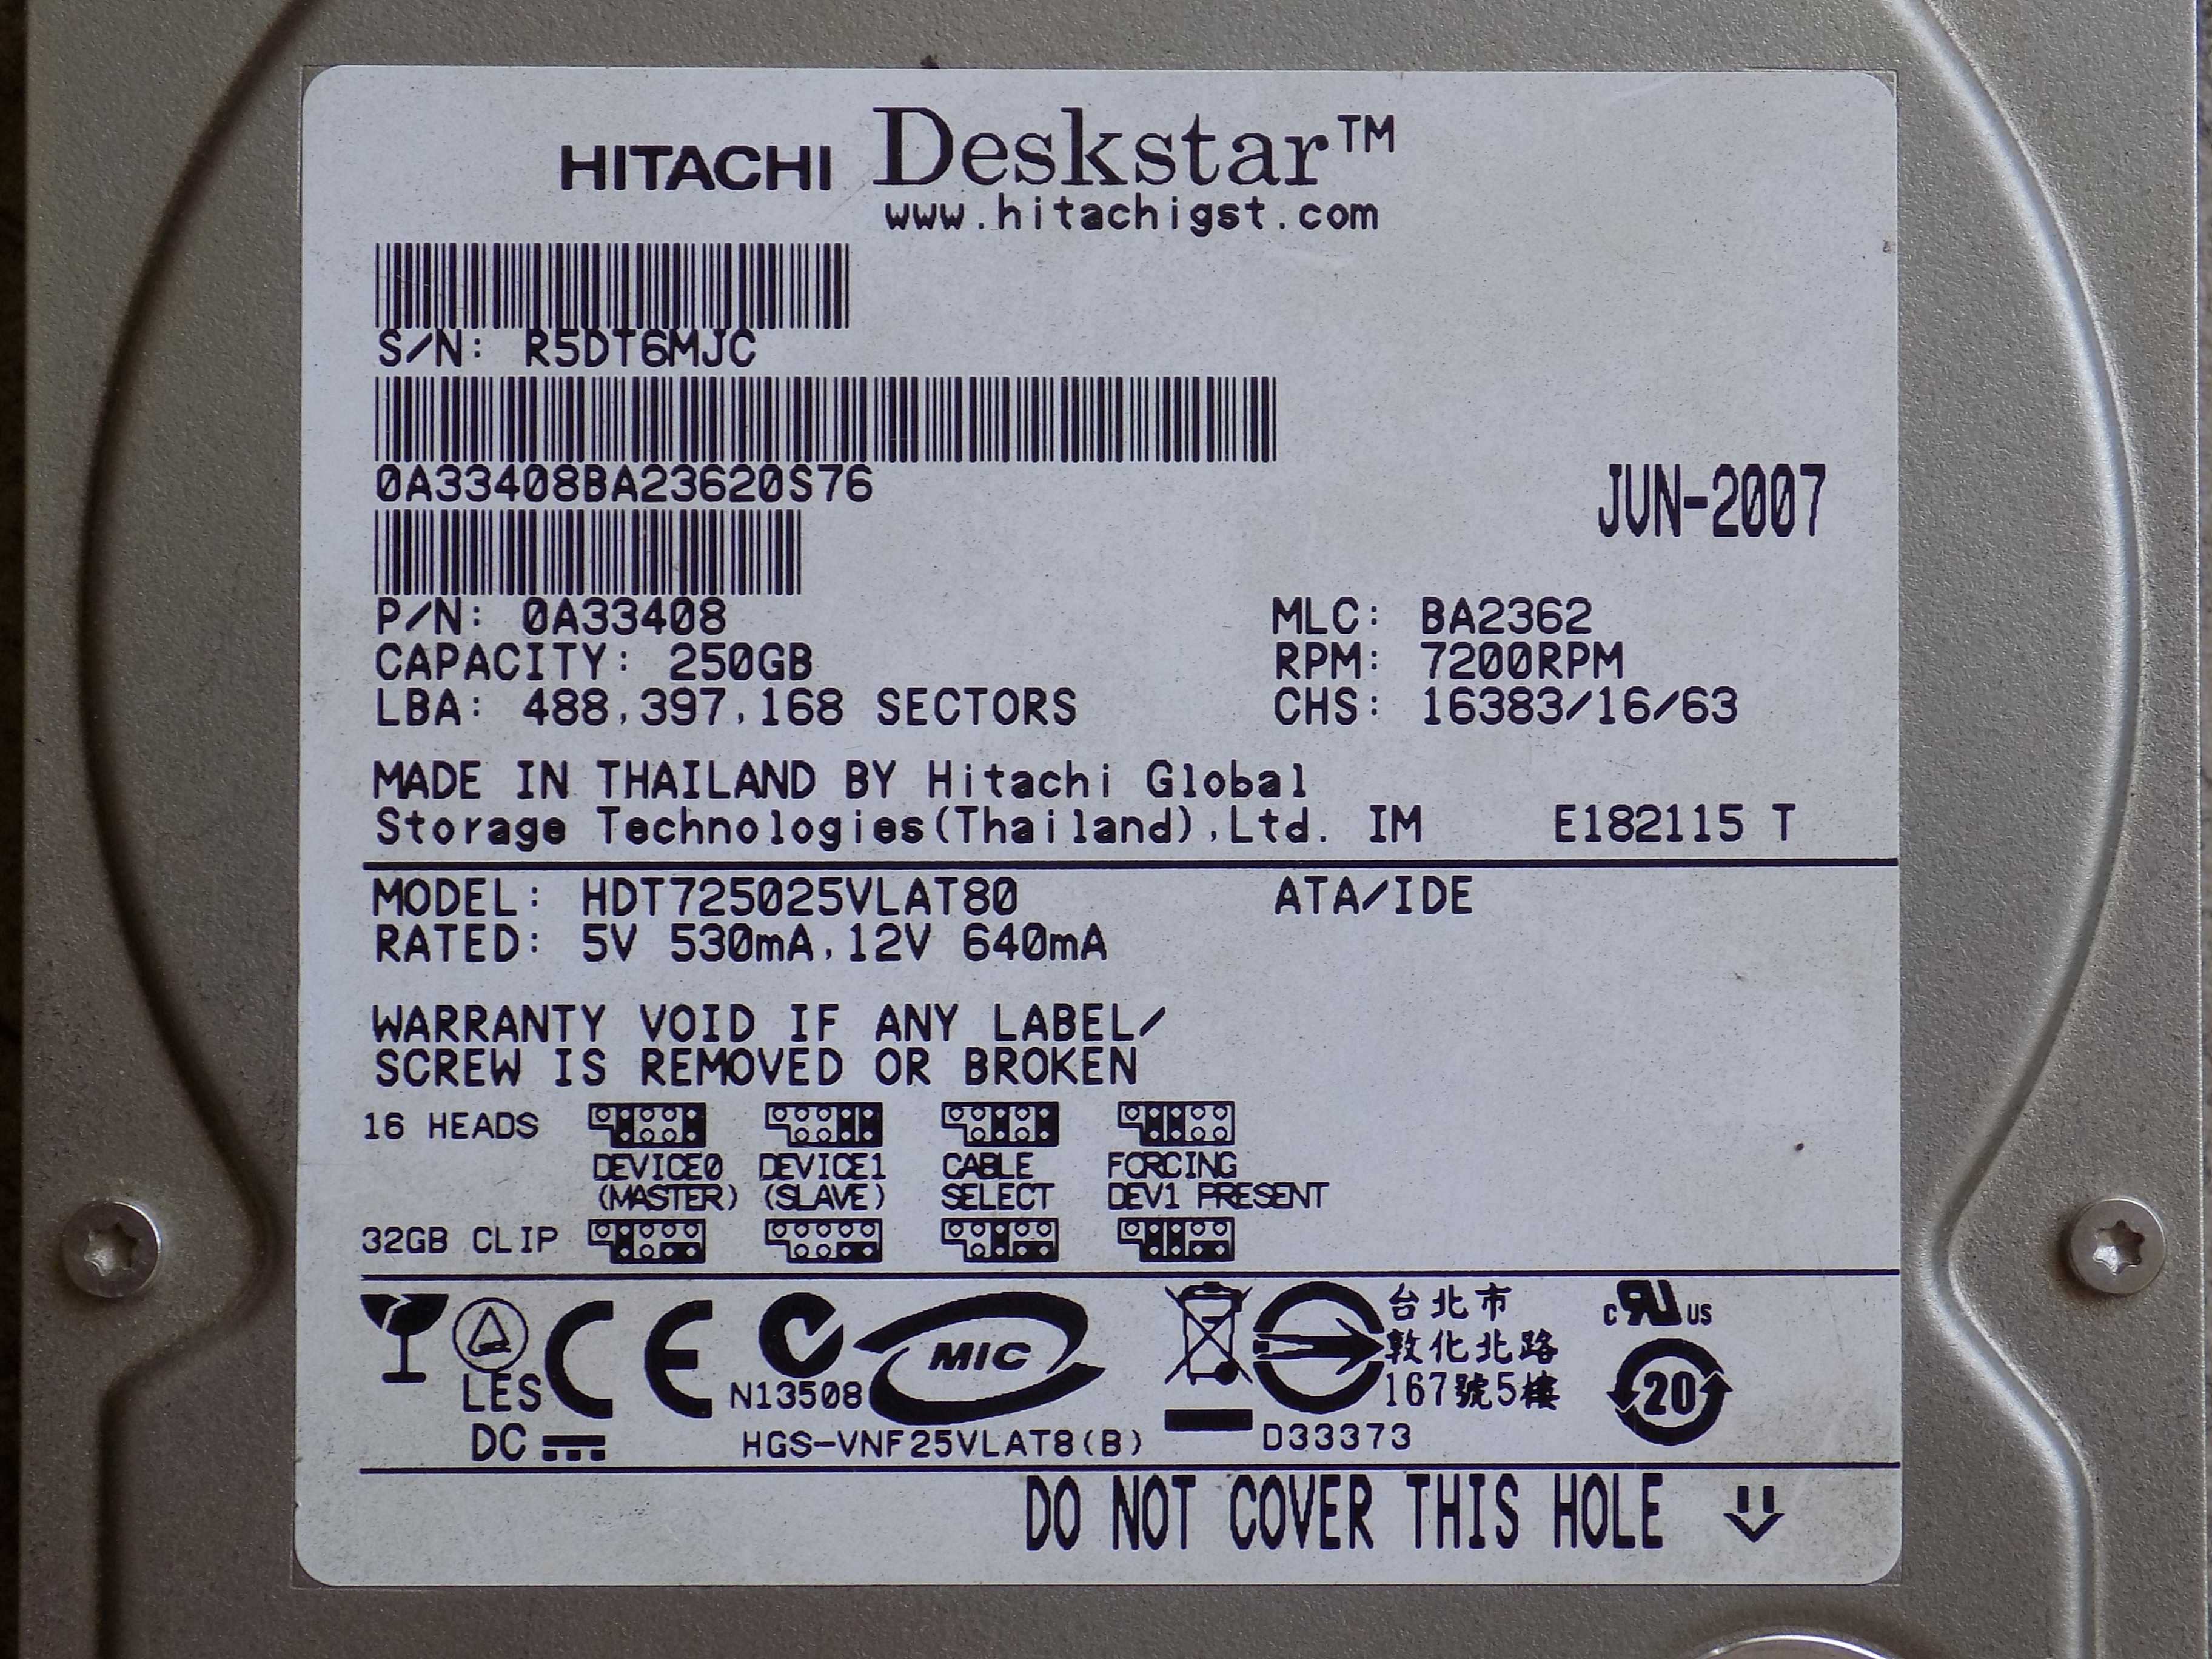 Жесткие диски Hitachi HDT 725025VLAT 80 и IC35L030AVVN07-0 и SVO221H